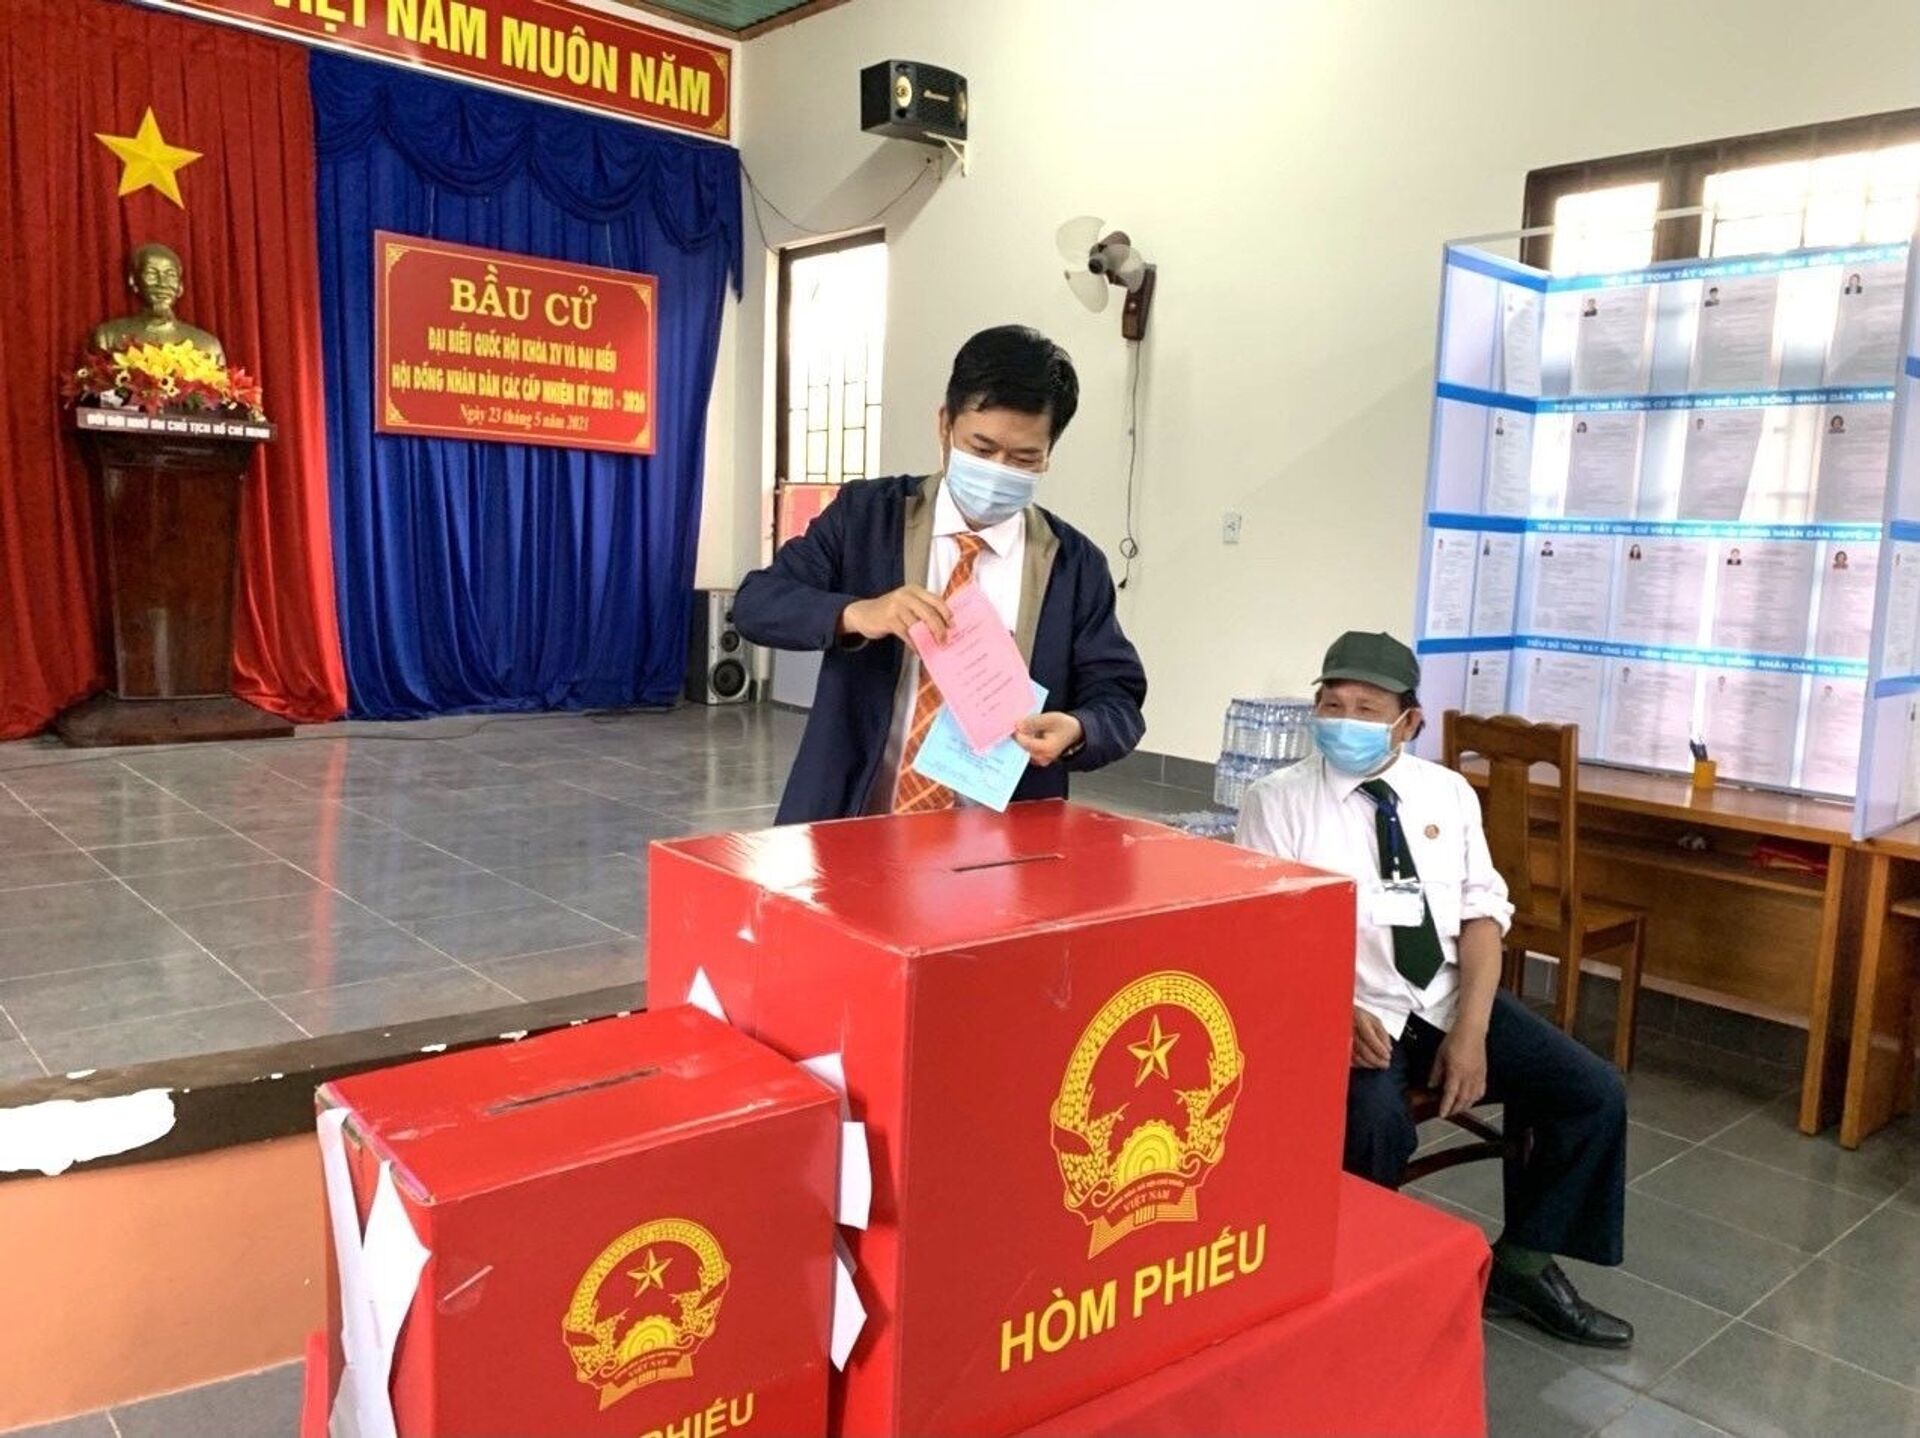 Bầu cử Việt Nam chứng minh tình đoàn kết của cường quốc kinh tế mới nổi châu Á - Sputnik Việt Nam, 1920, 24.05.2021